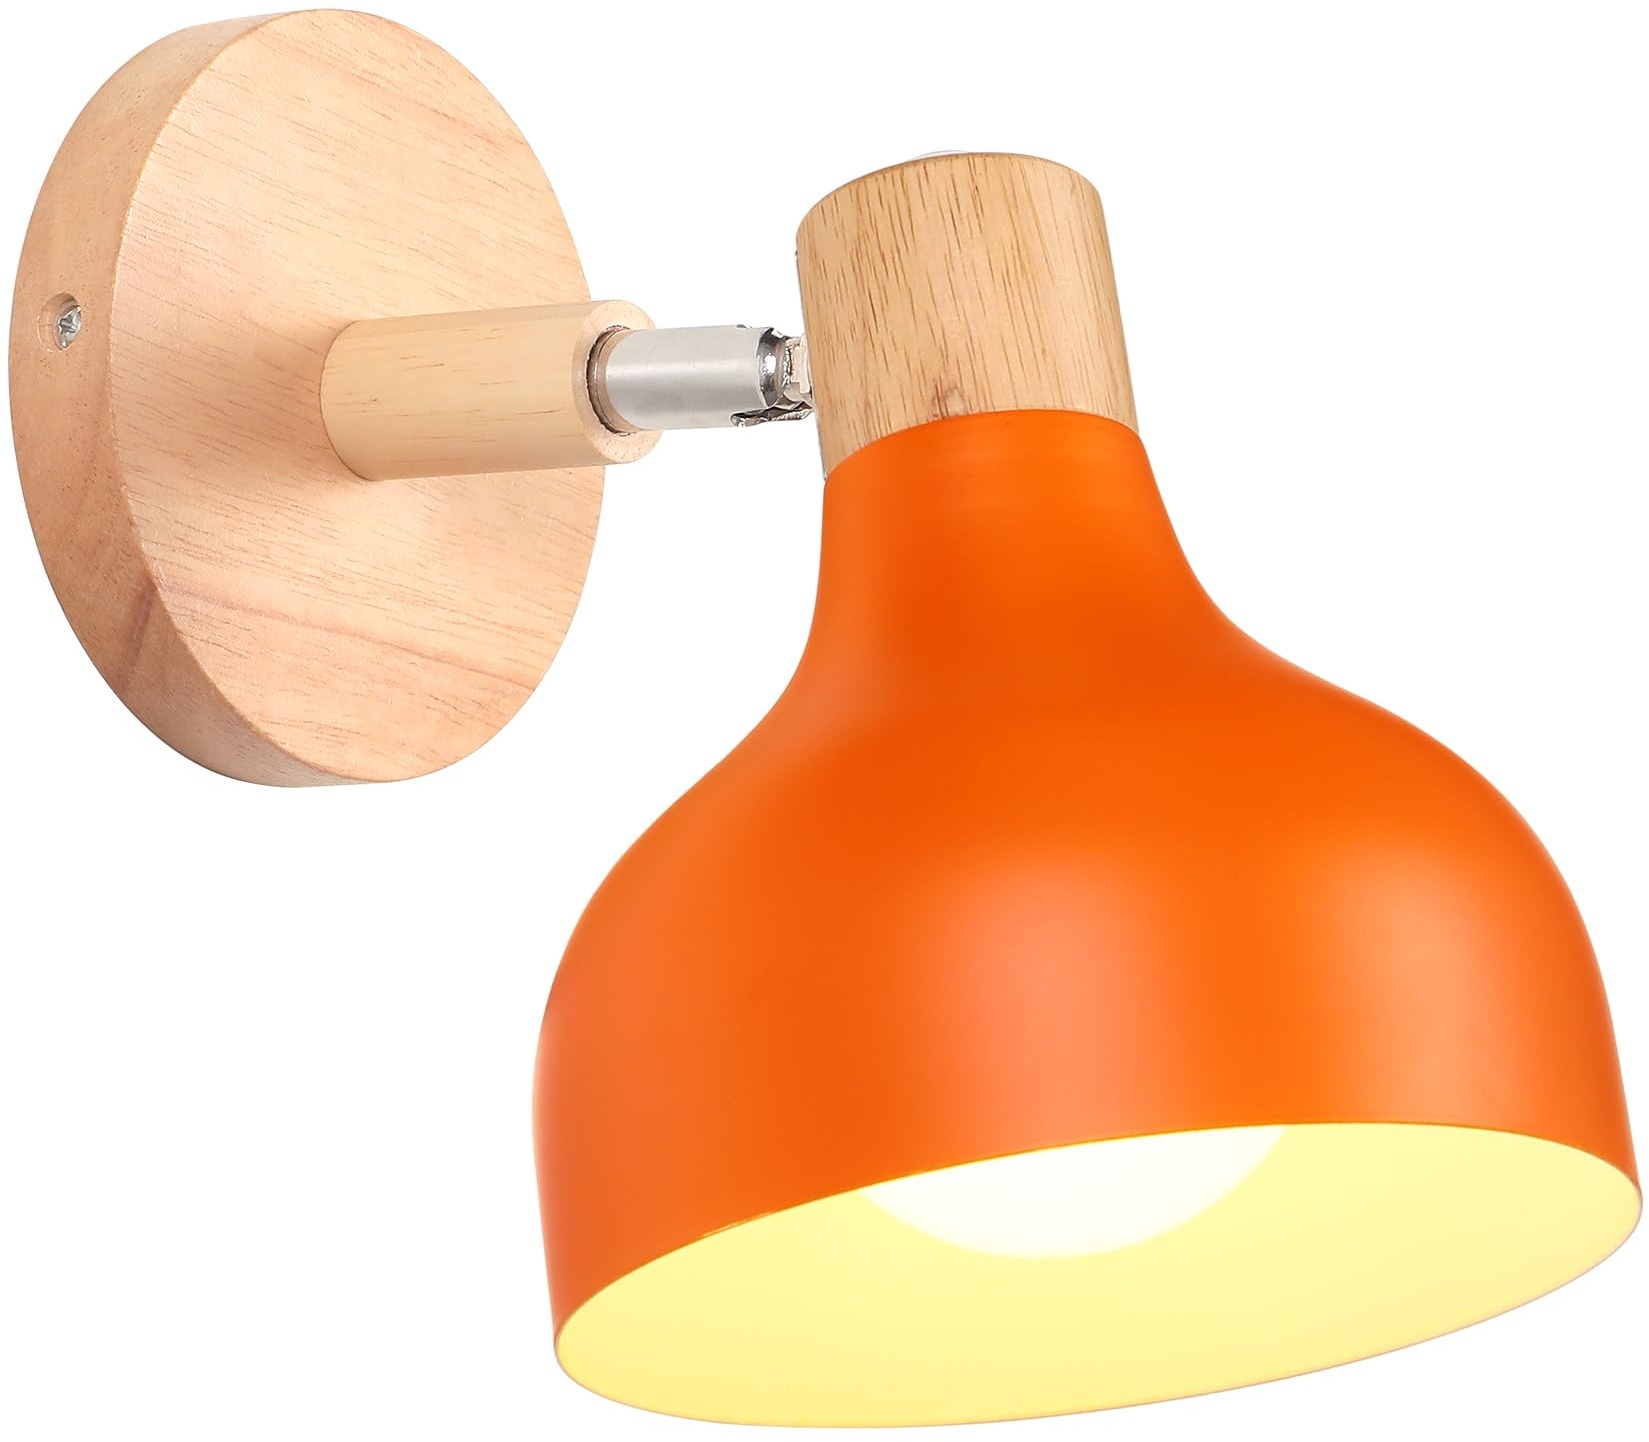 iDEGU Wandlampe Retro E27 Wandleuchte Moderne aus Holz Metall im Skandinavischen Stil Lampenschirm Tropfenförmig Verstellbare Wandspot Vintage Lampe für Schlafzimmer Wohnzimmer (Orange, 1 Stück)